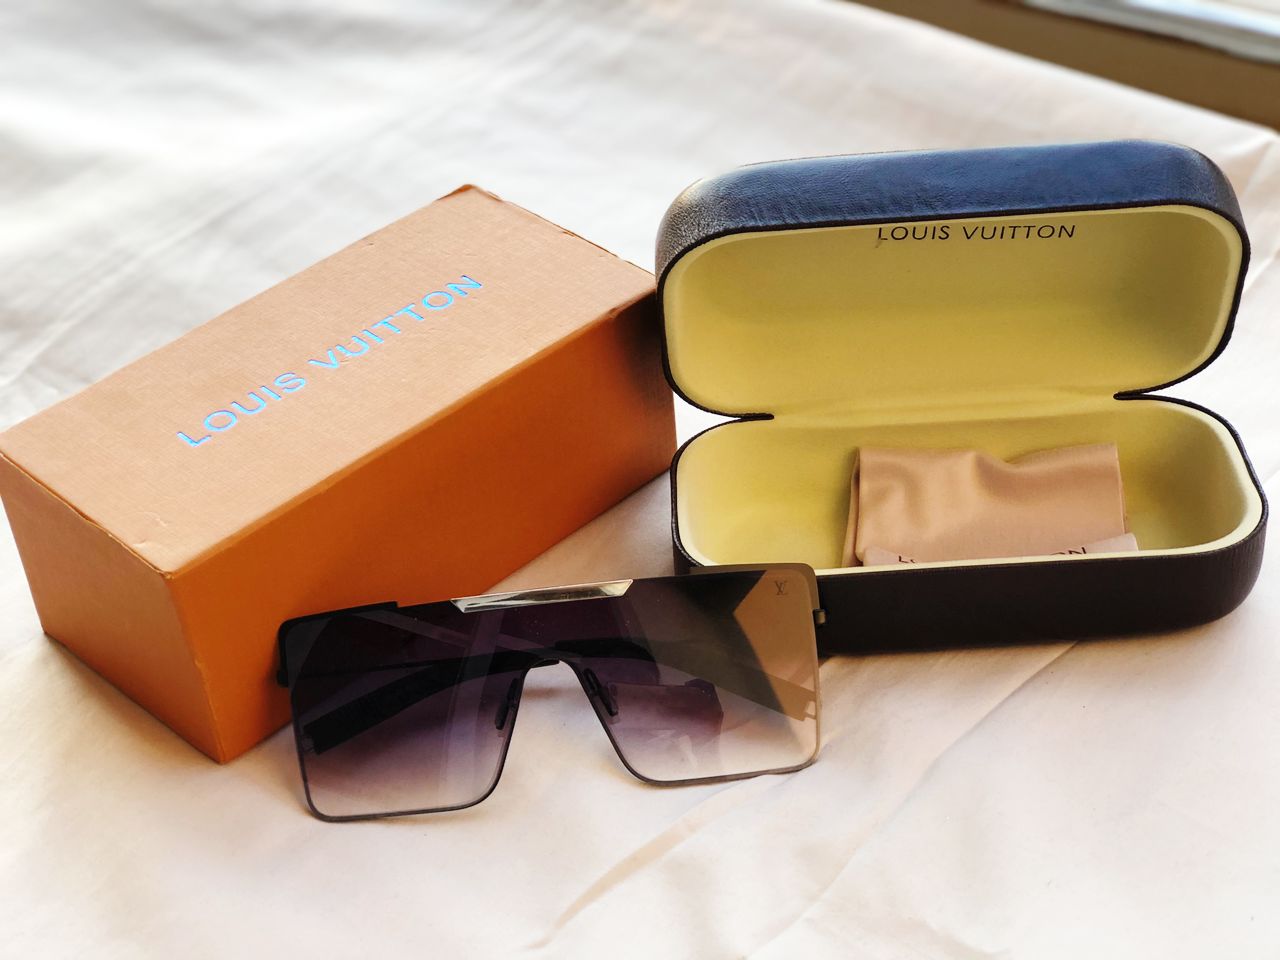 Louis Vuitton 96006 Black White - Original Box, Optical Sunglasses,  Sunglasses, Dark Sunglasses, Sun Goggles, धूप के चश्में - Mangwow Online,  Mumbai | ID: 2853038333697